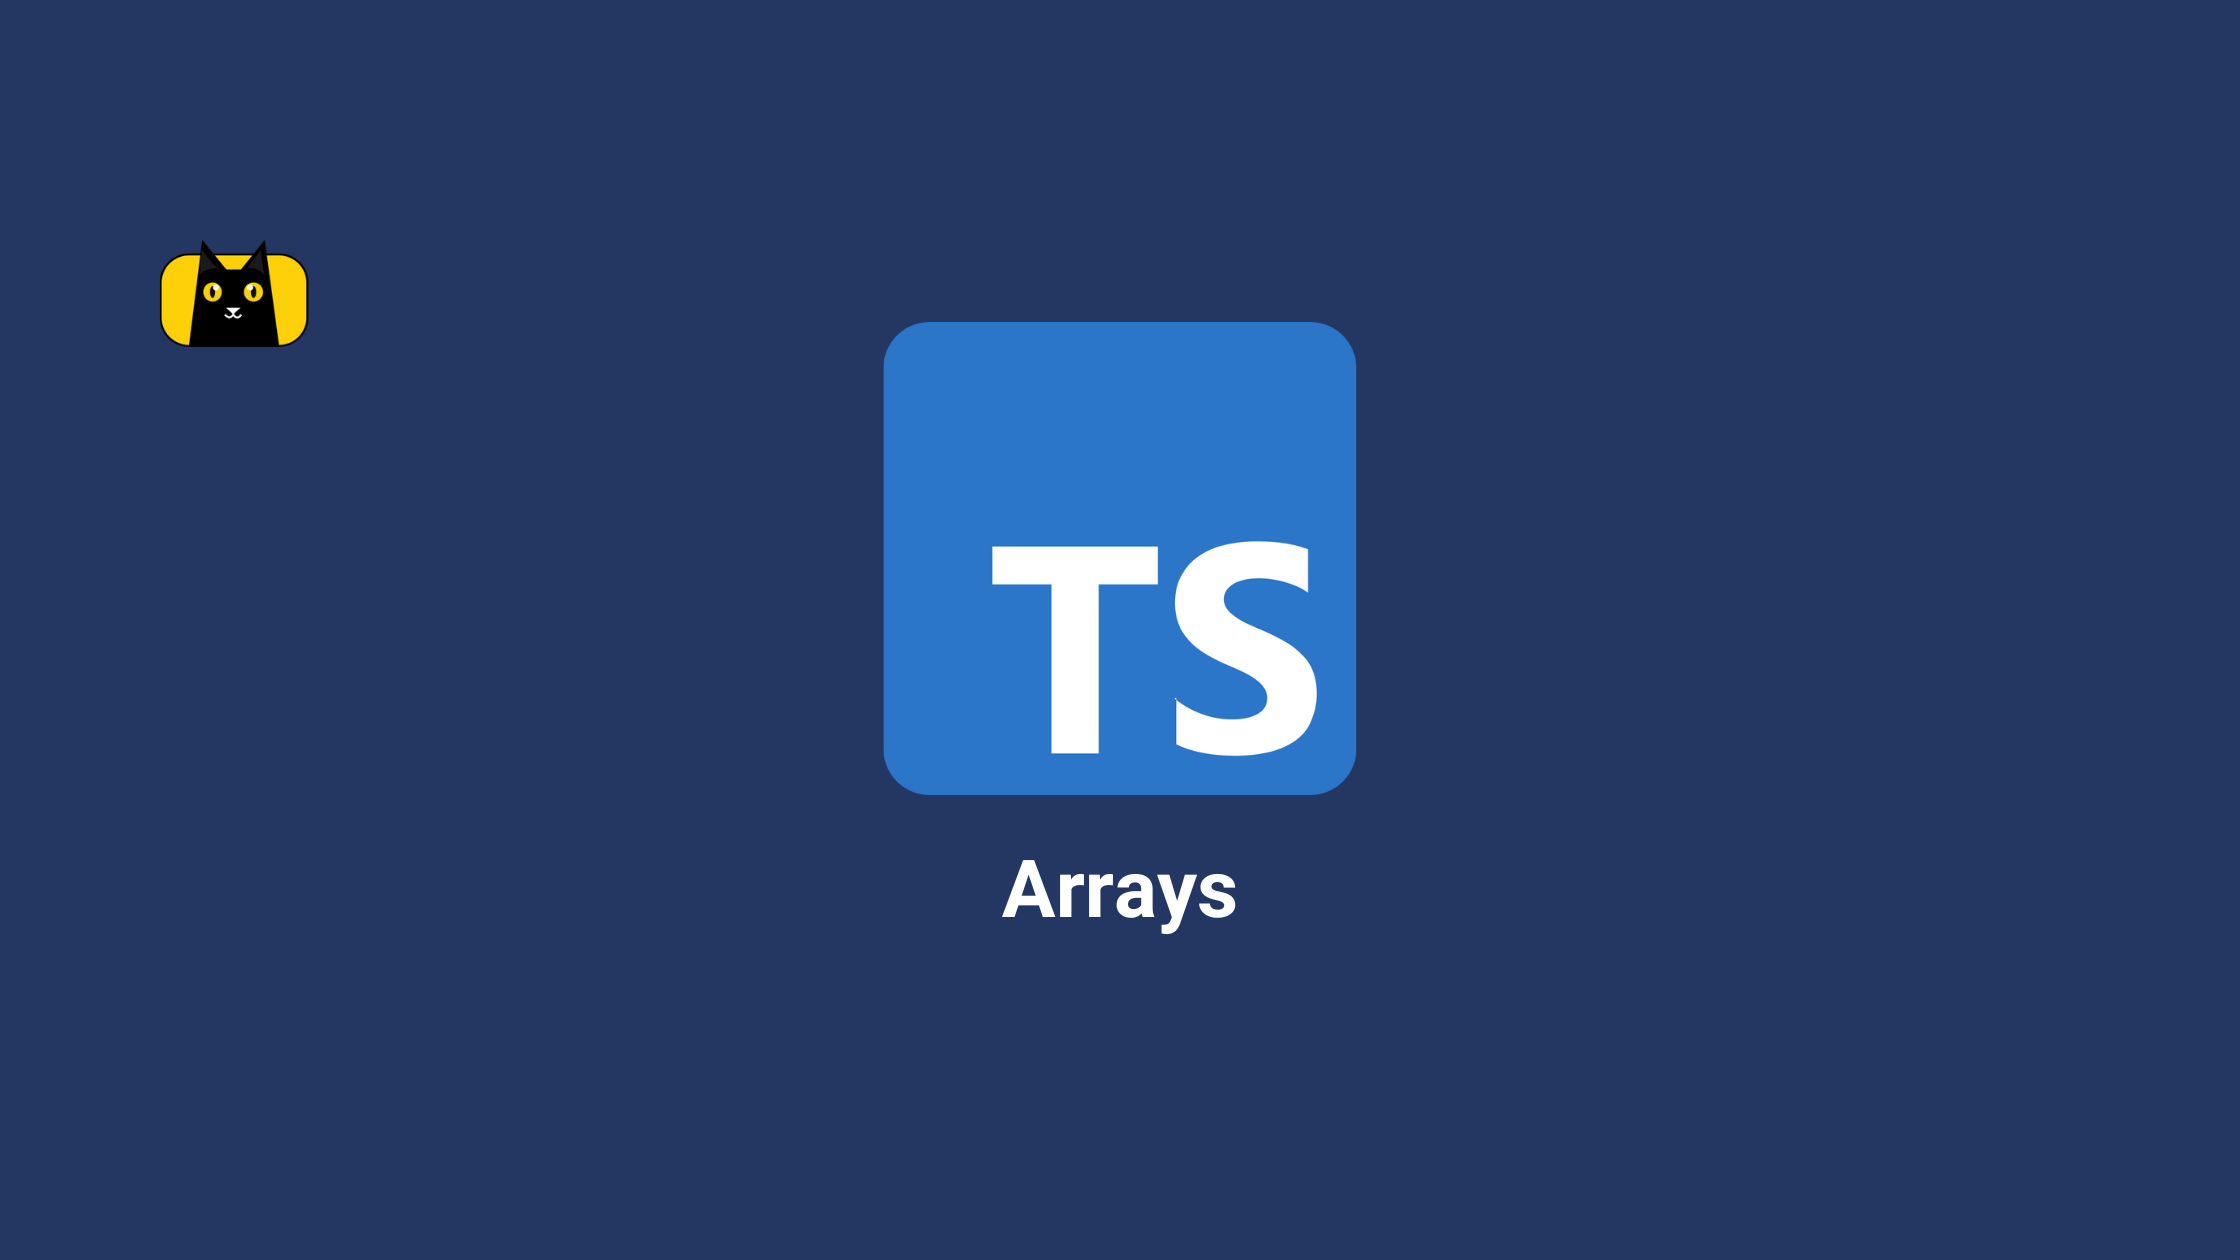 Typescript Arrays